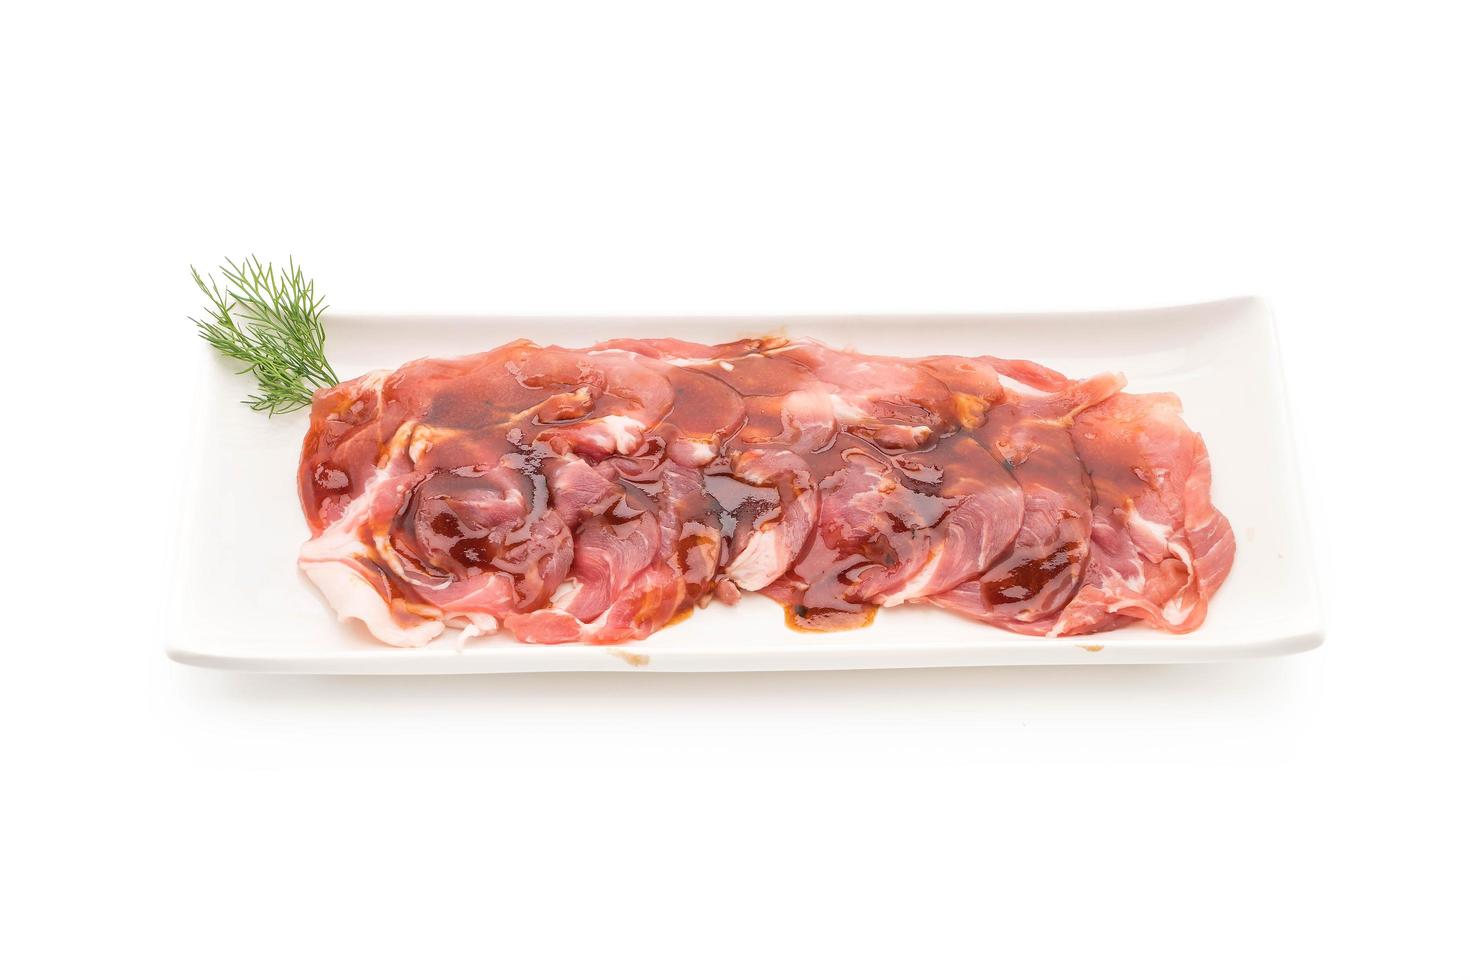 Carne de cerdo fresca en rodajas con salsa sobre fondo blanco. foto